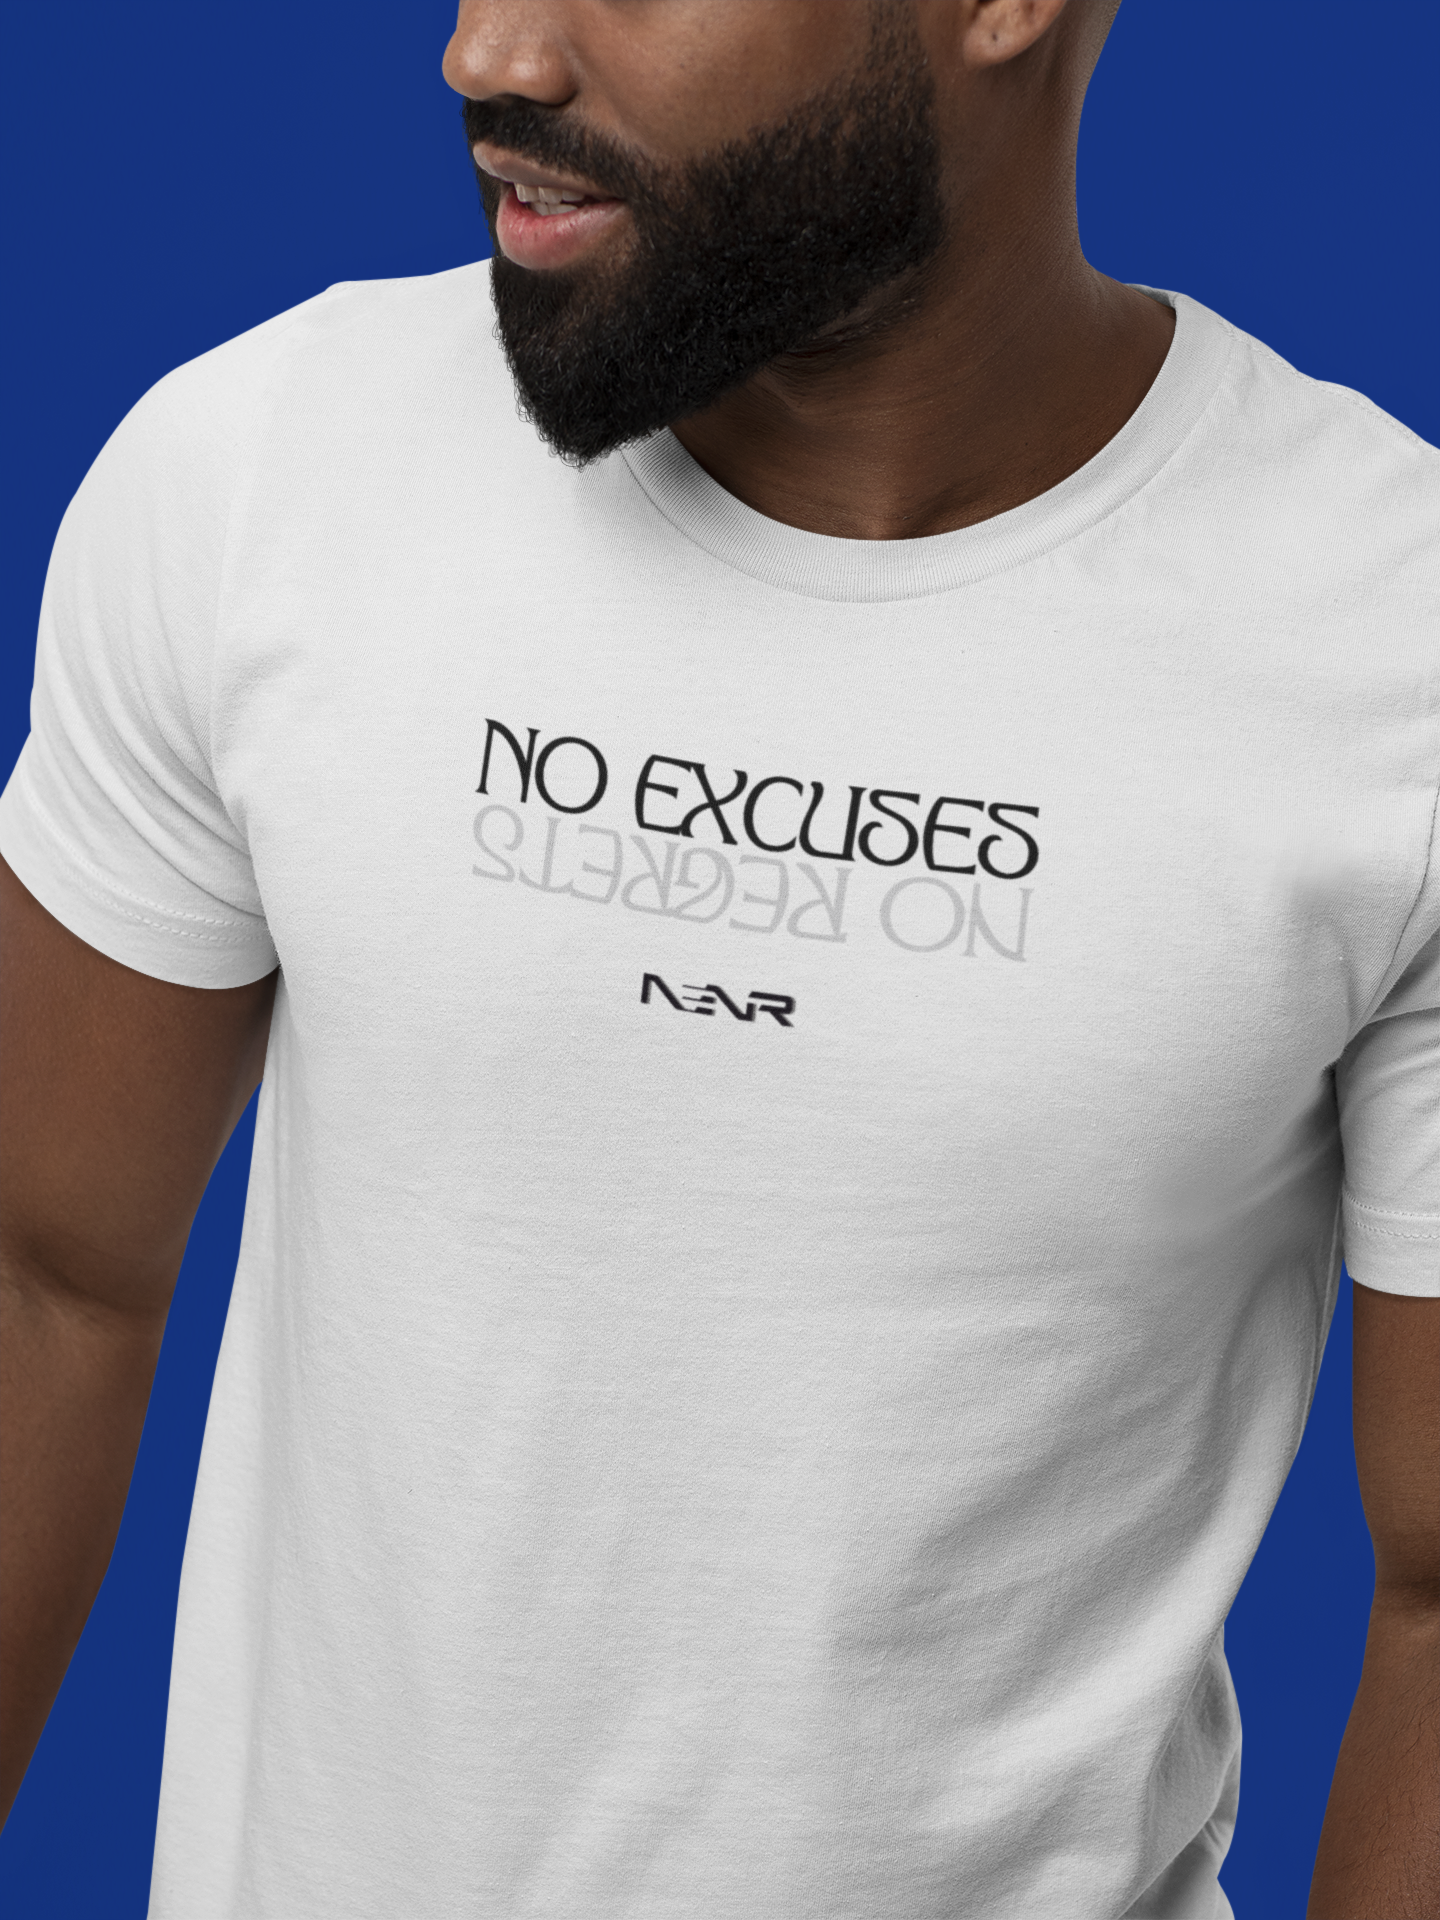 NO EXCUSES NO REGRETS ~ NENR